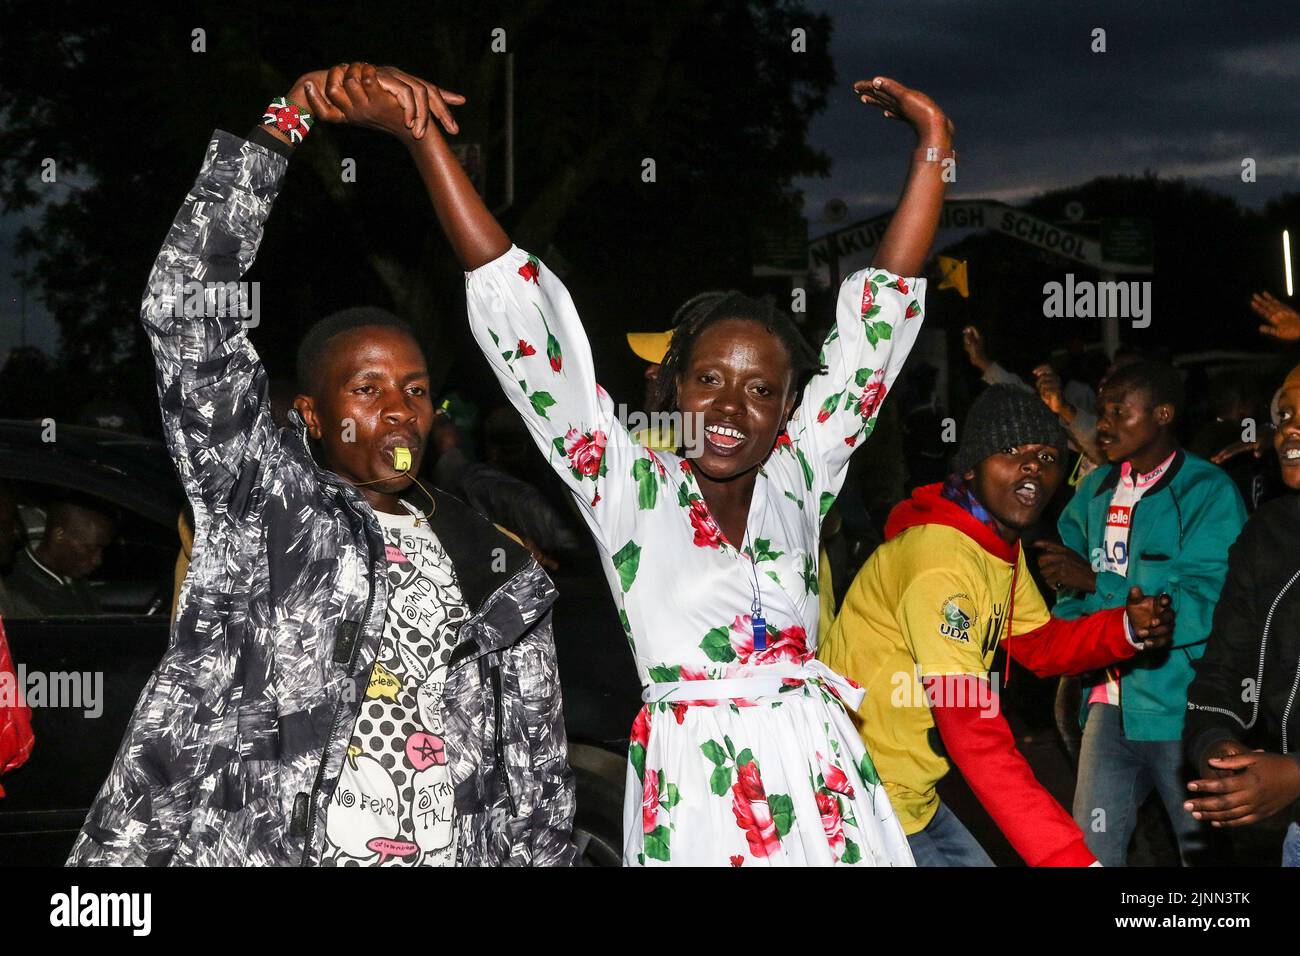 Die Menschen tanzen auf der Straße, kurz nachdem Susan Kihika, Liza Chelule und Tabitha Karanja, alle Frauen, zu den Gewinnern der obersten Sitze im Nakuru County erklärt wurden. Die Kenianer warten darauf, dass die Präsidentschaftswahlen abgeschlossen sind, um ihren nächsten Präsidenten kennen zu können, wobei das Rennen zwischen Raila Odinga und William Ruto sehr eng ist. Stockfoto